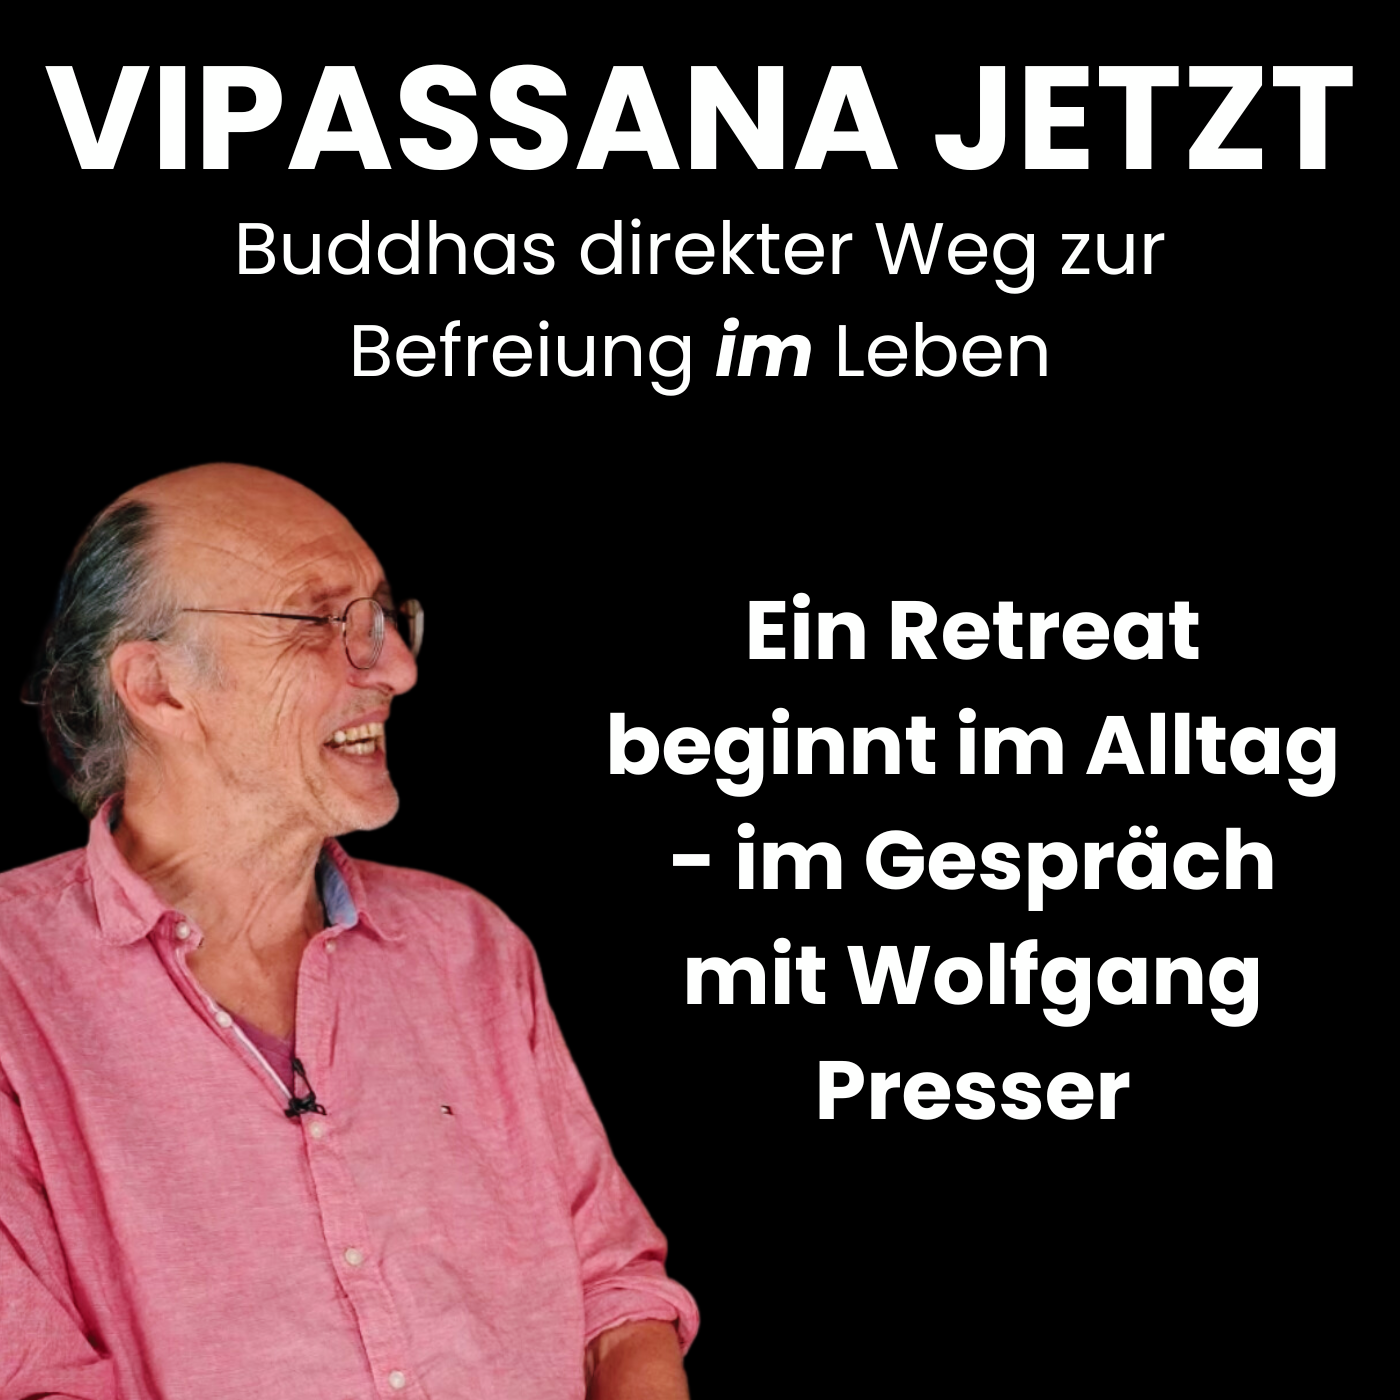 Ein Retreat beginnt im Alltag - im Gespräch mit Wolfgang Presser